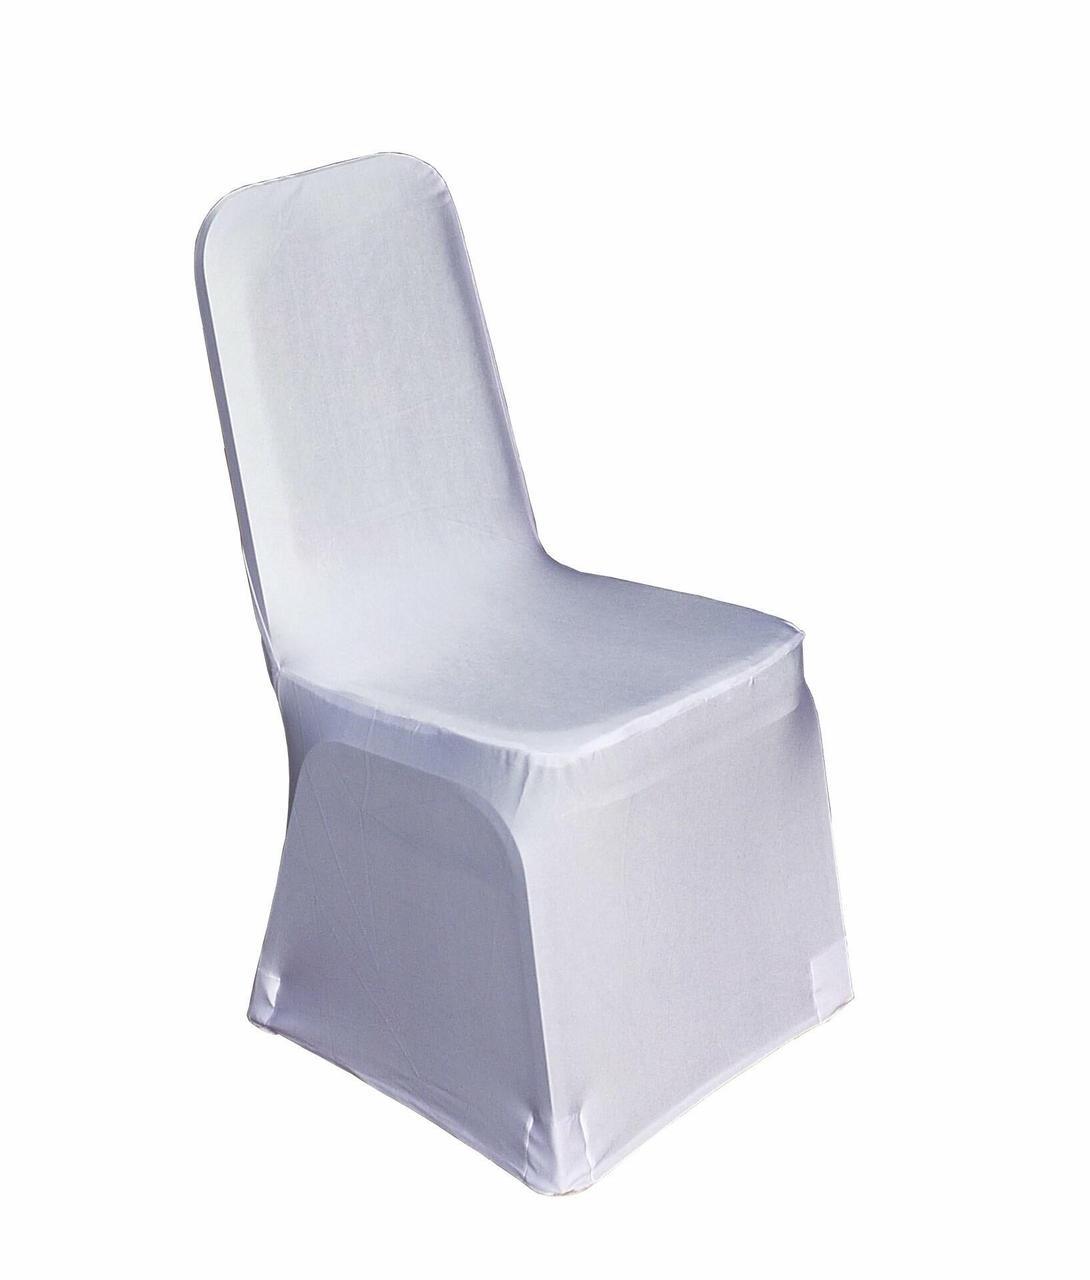 Stretchhussen Stuhlüberzug für eckige Lehne, Farbe: Weiß